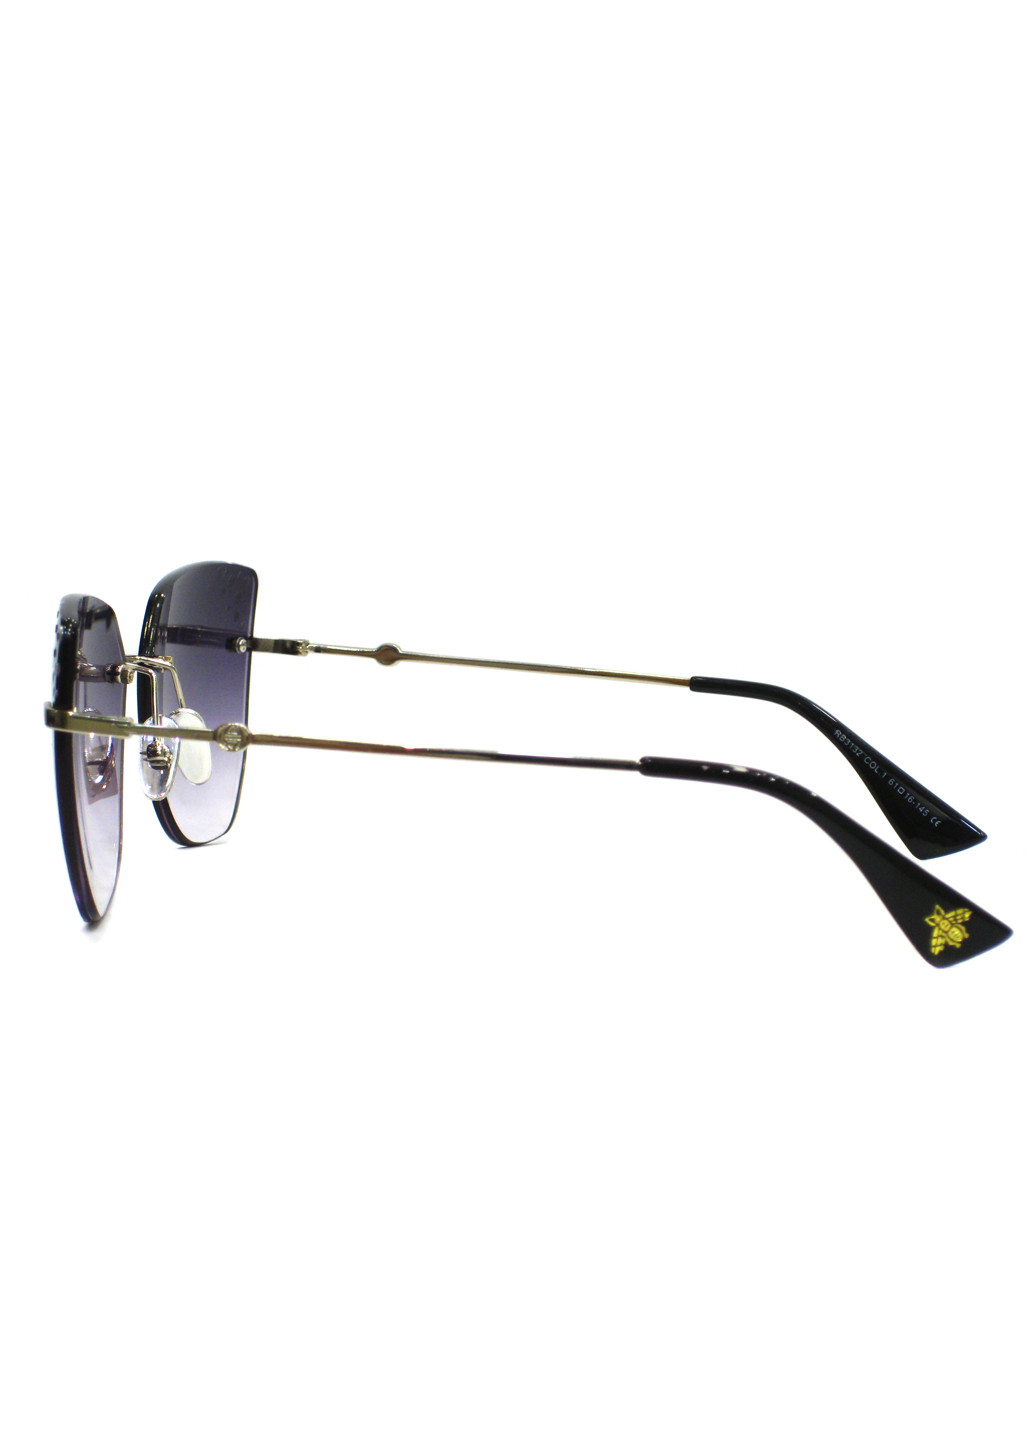 Cолнцезащитные очки Rita Bradley rb3132 c1 (194585345)